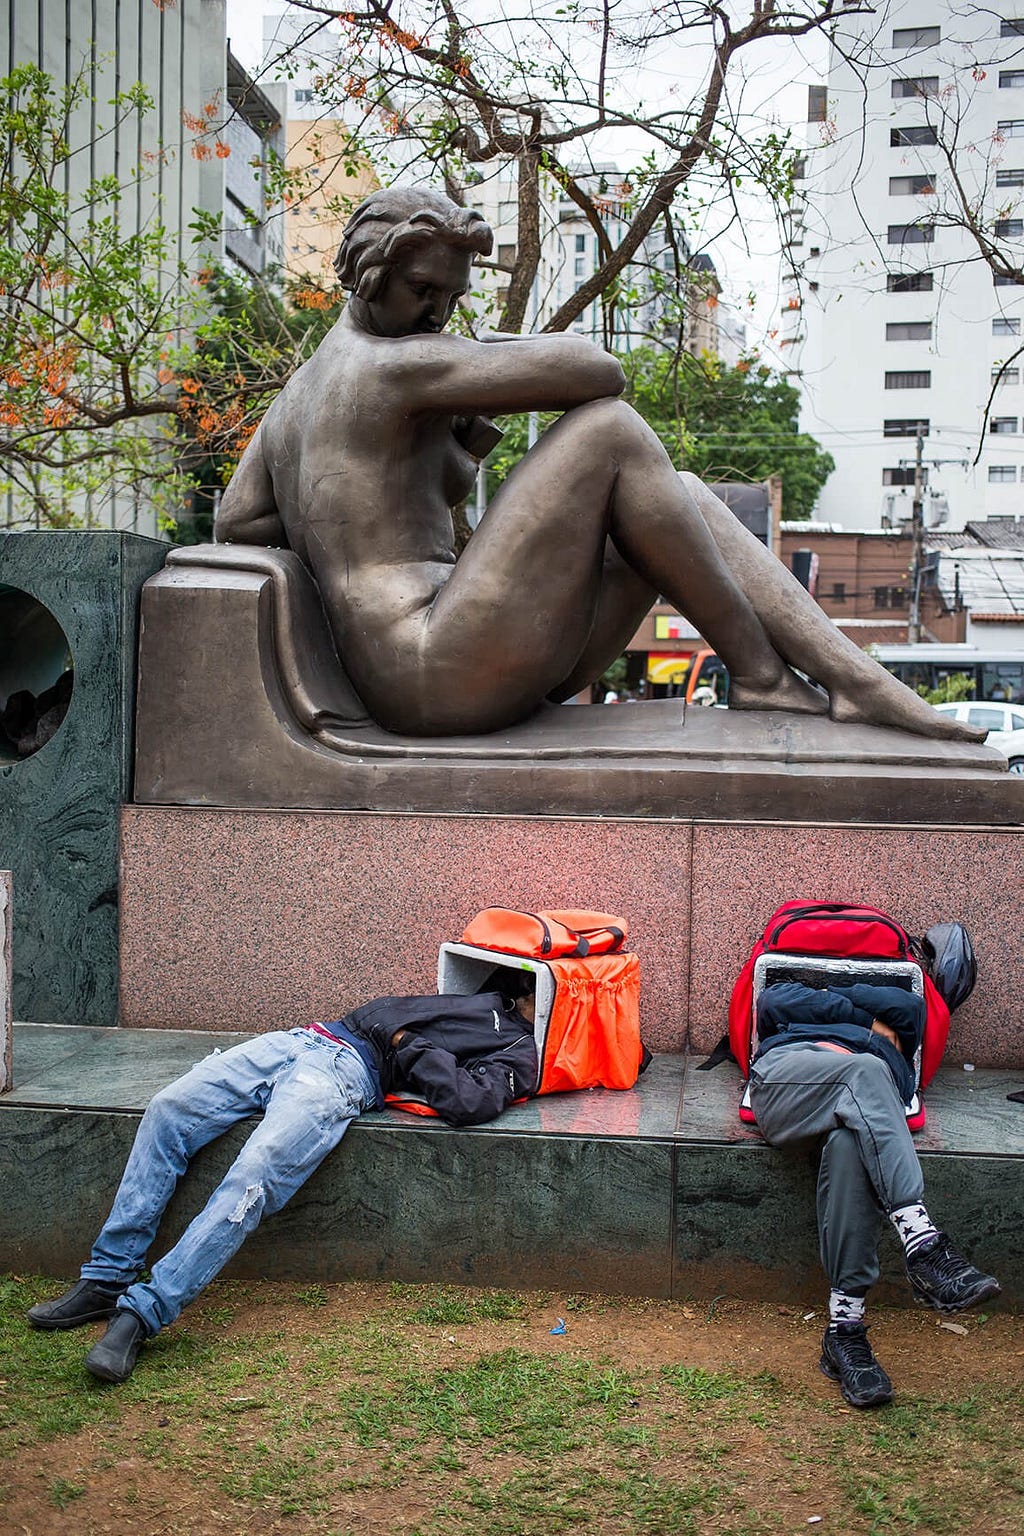 Dois homens estão deitados abaixo de um monumento de bronze, ambos estao com a cabeça enfiada dentro de uma mochila termica.